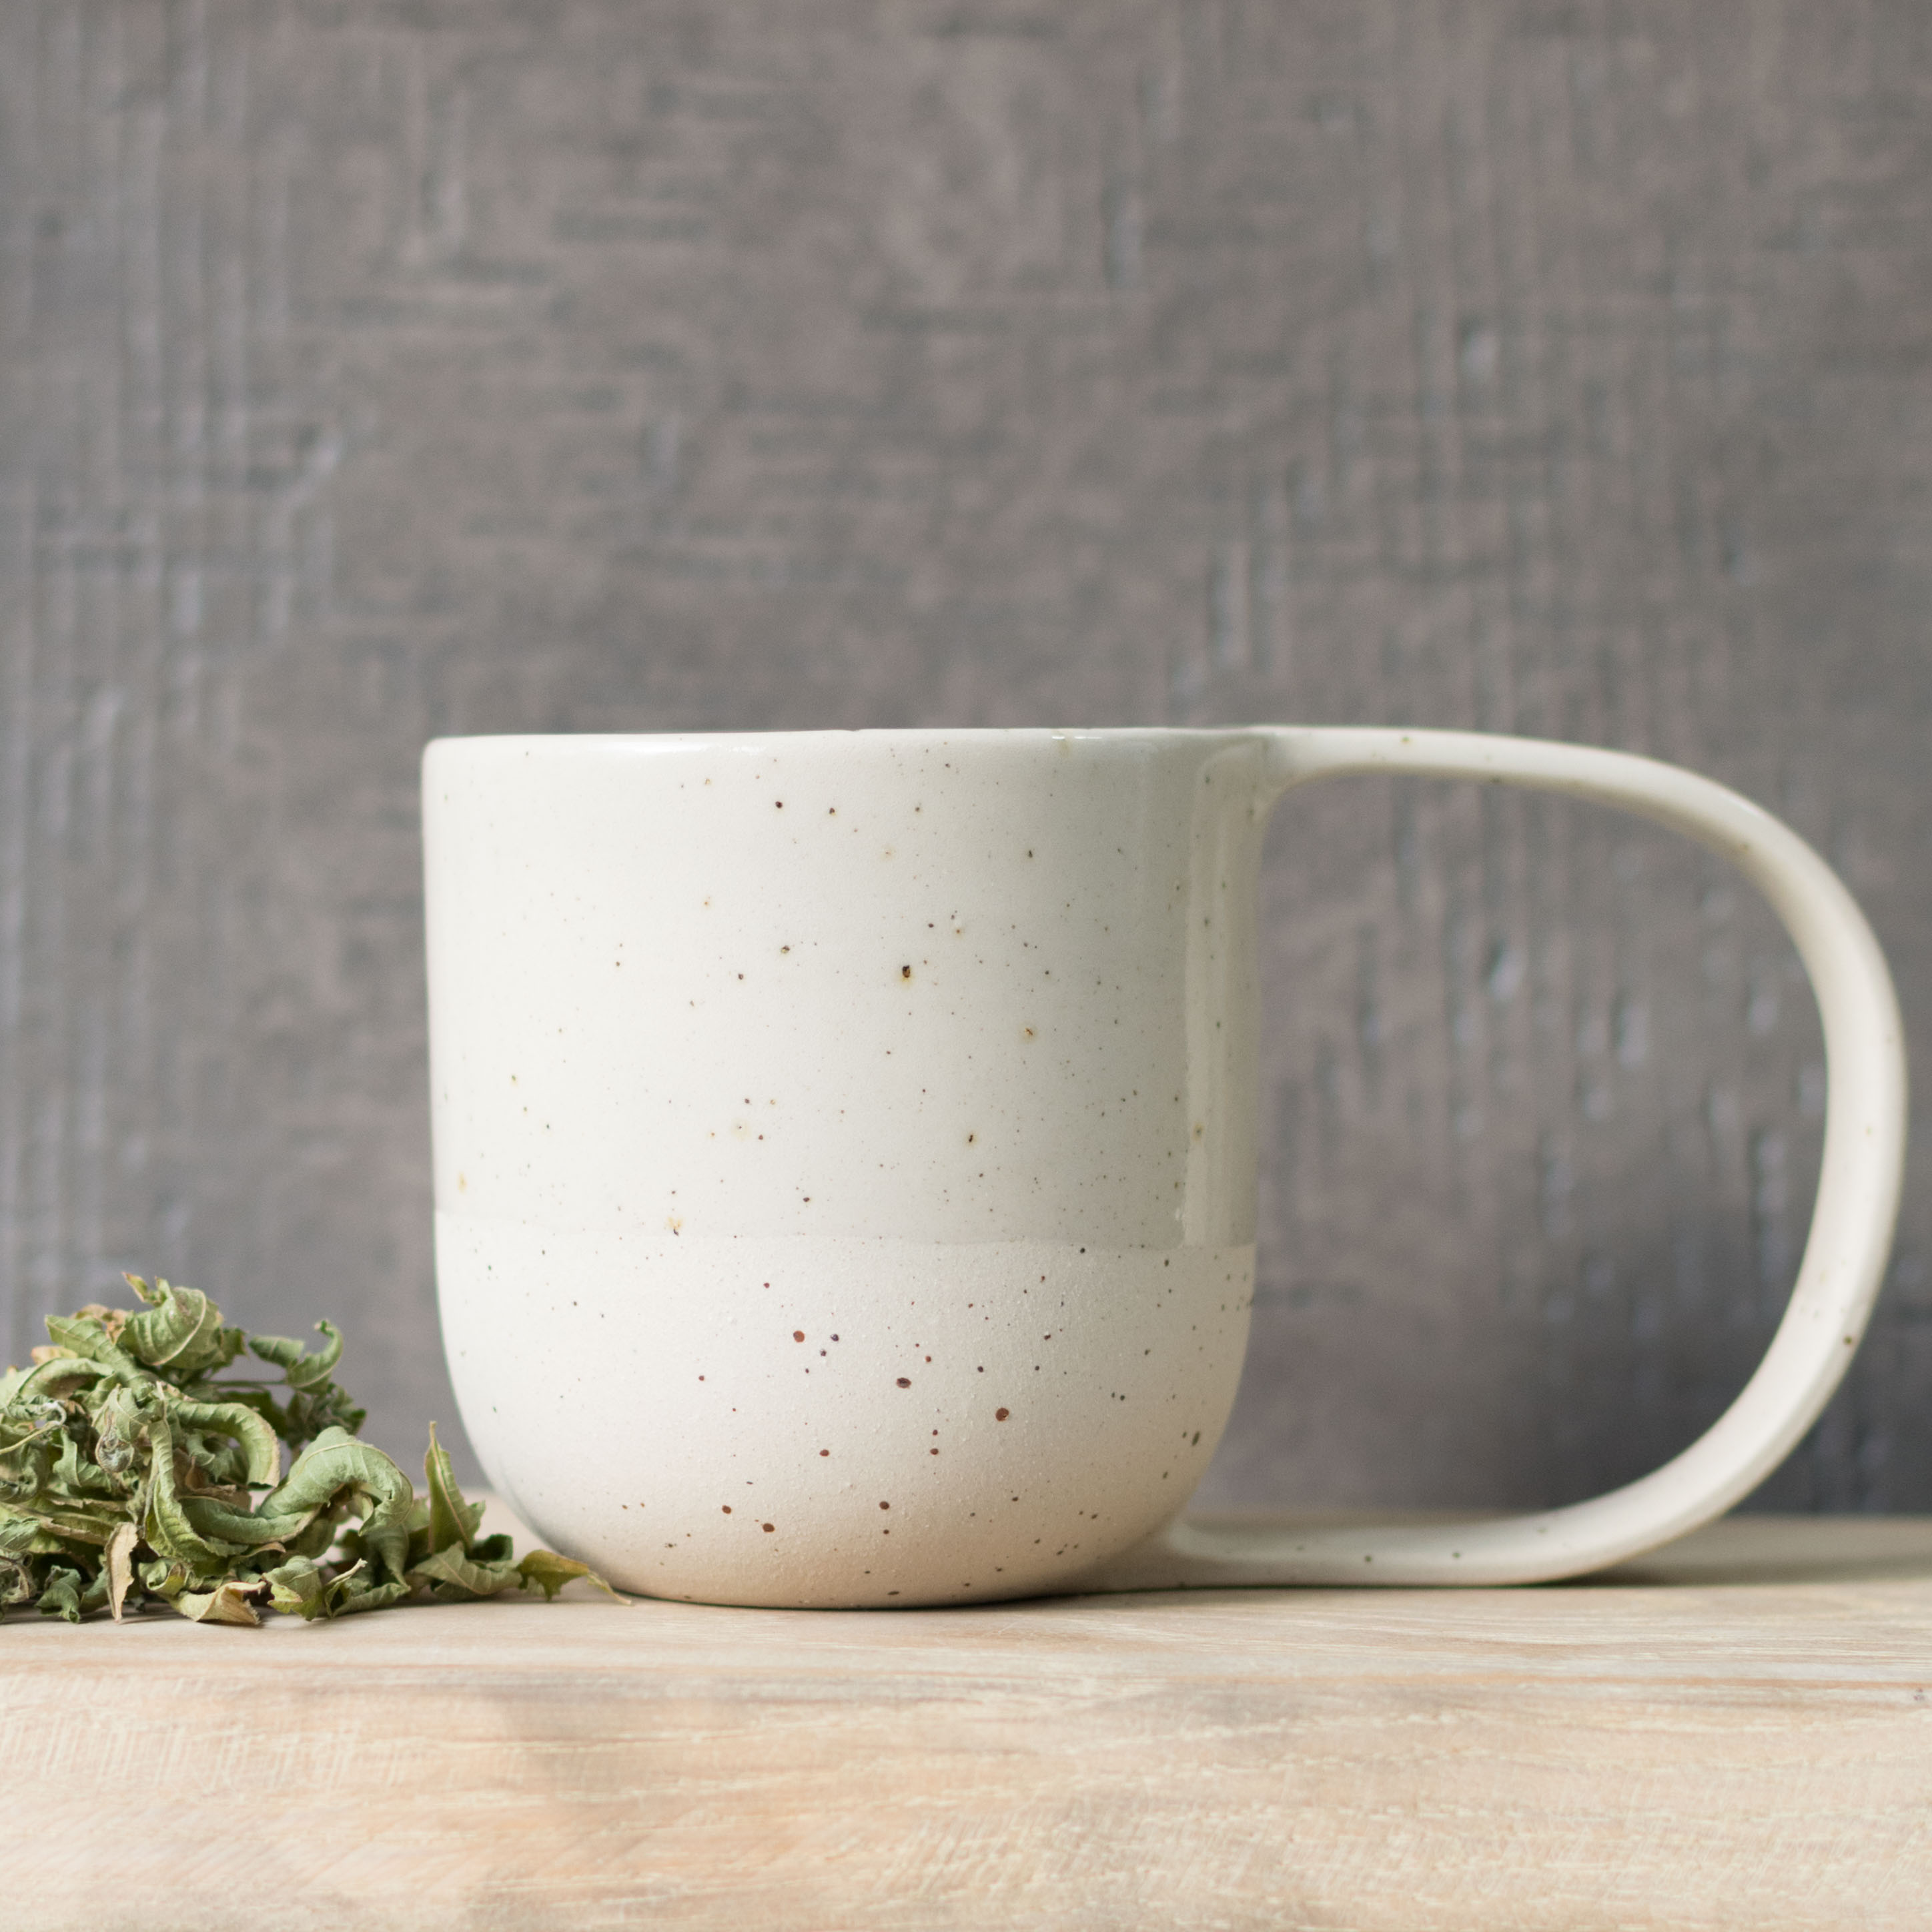 Accessoires thé : tasses, mugs et autres accessoires pour le thé